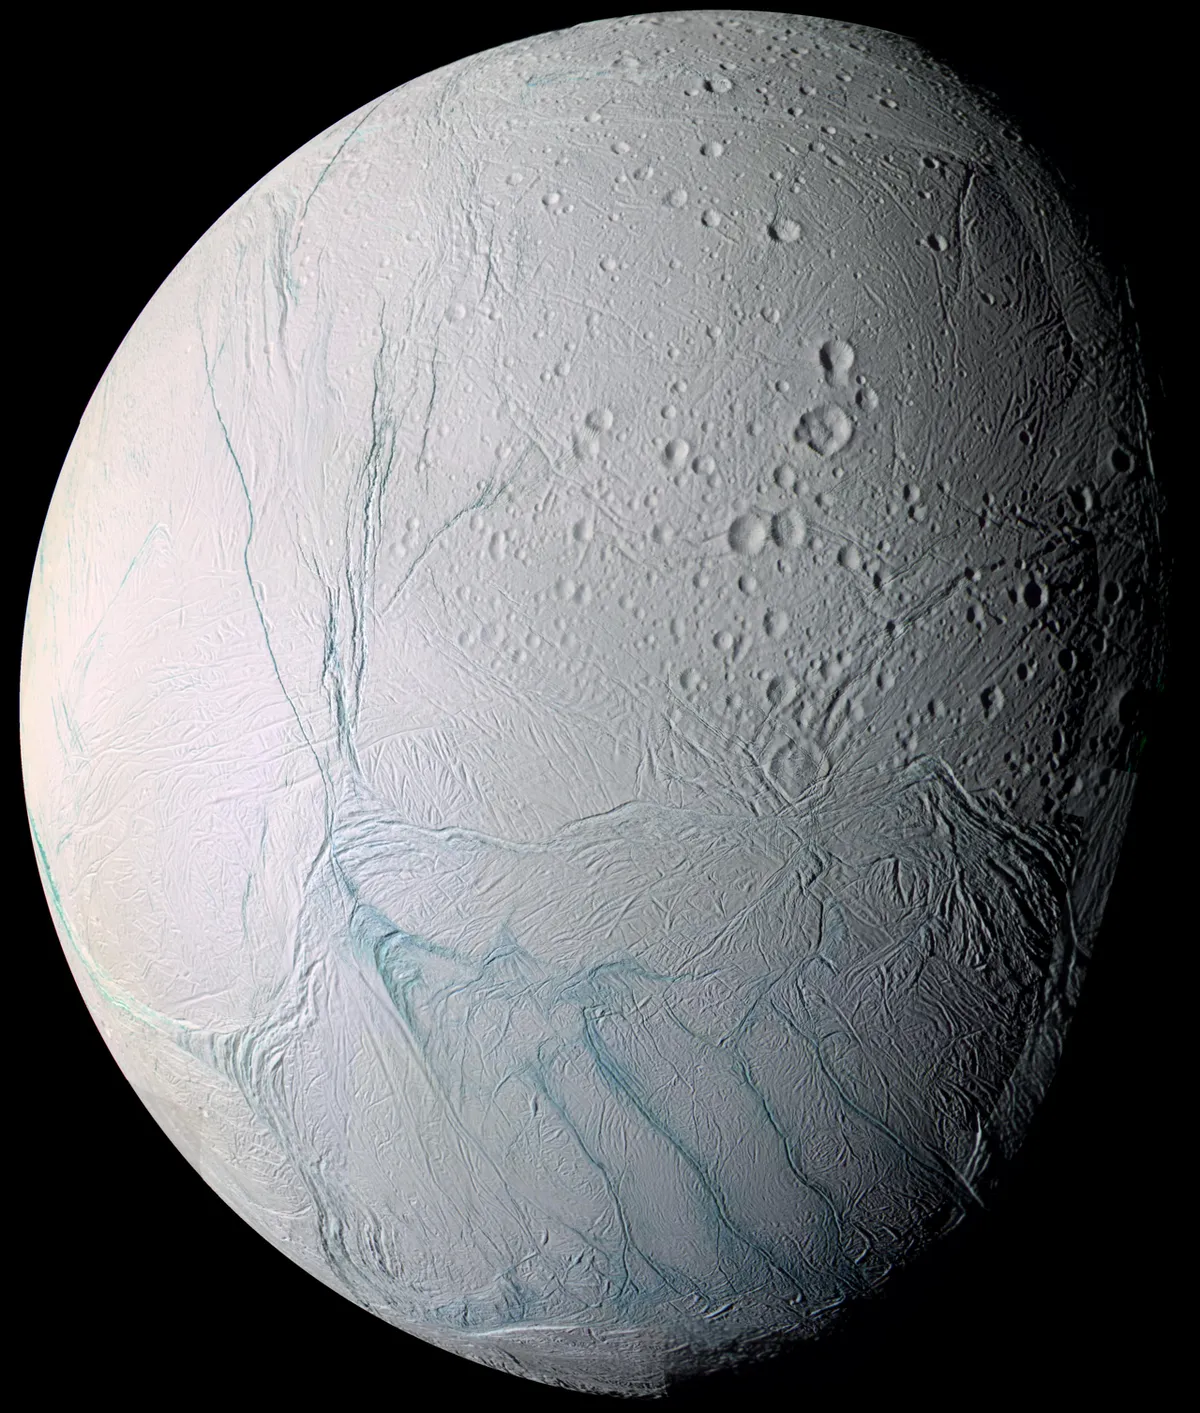 Enceladus © NASA/JPL/Space Science Institute